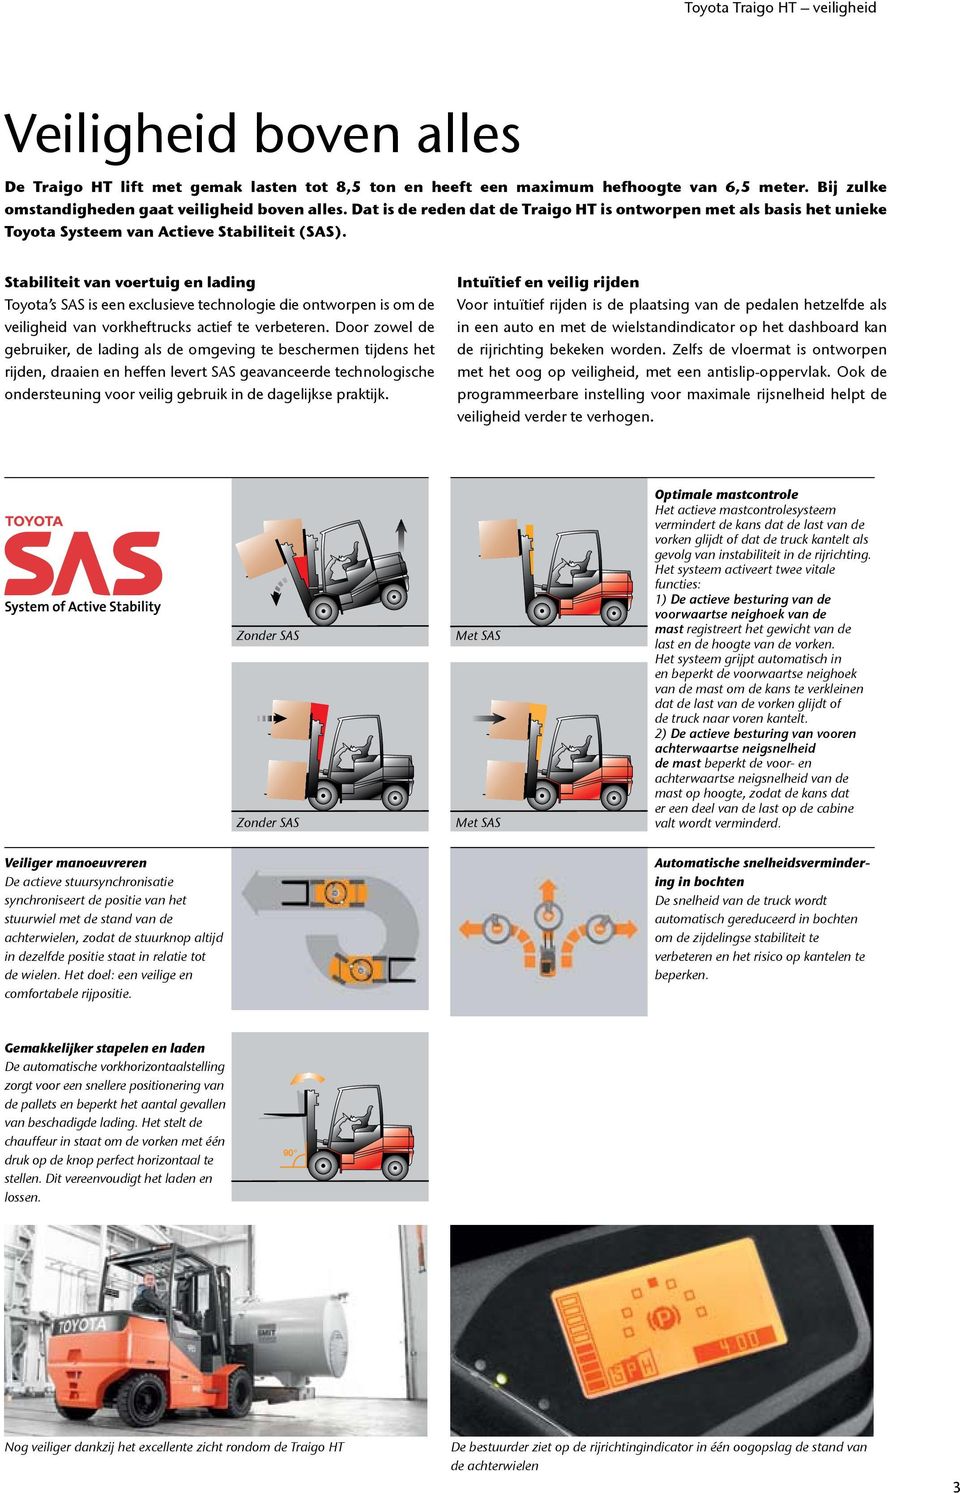 Stabiliteit van voertuig en lading Toyota s SAS is een eclusieve technologie die ontworpen is om de veiligheid van vorkheftrucks actief te verbeteren.